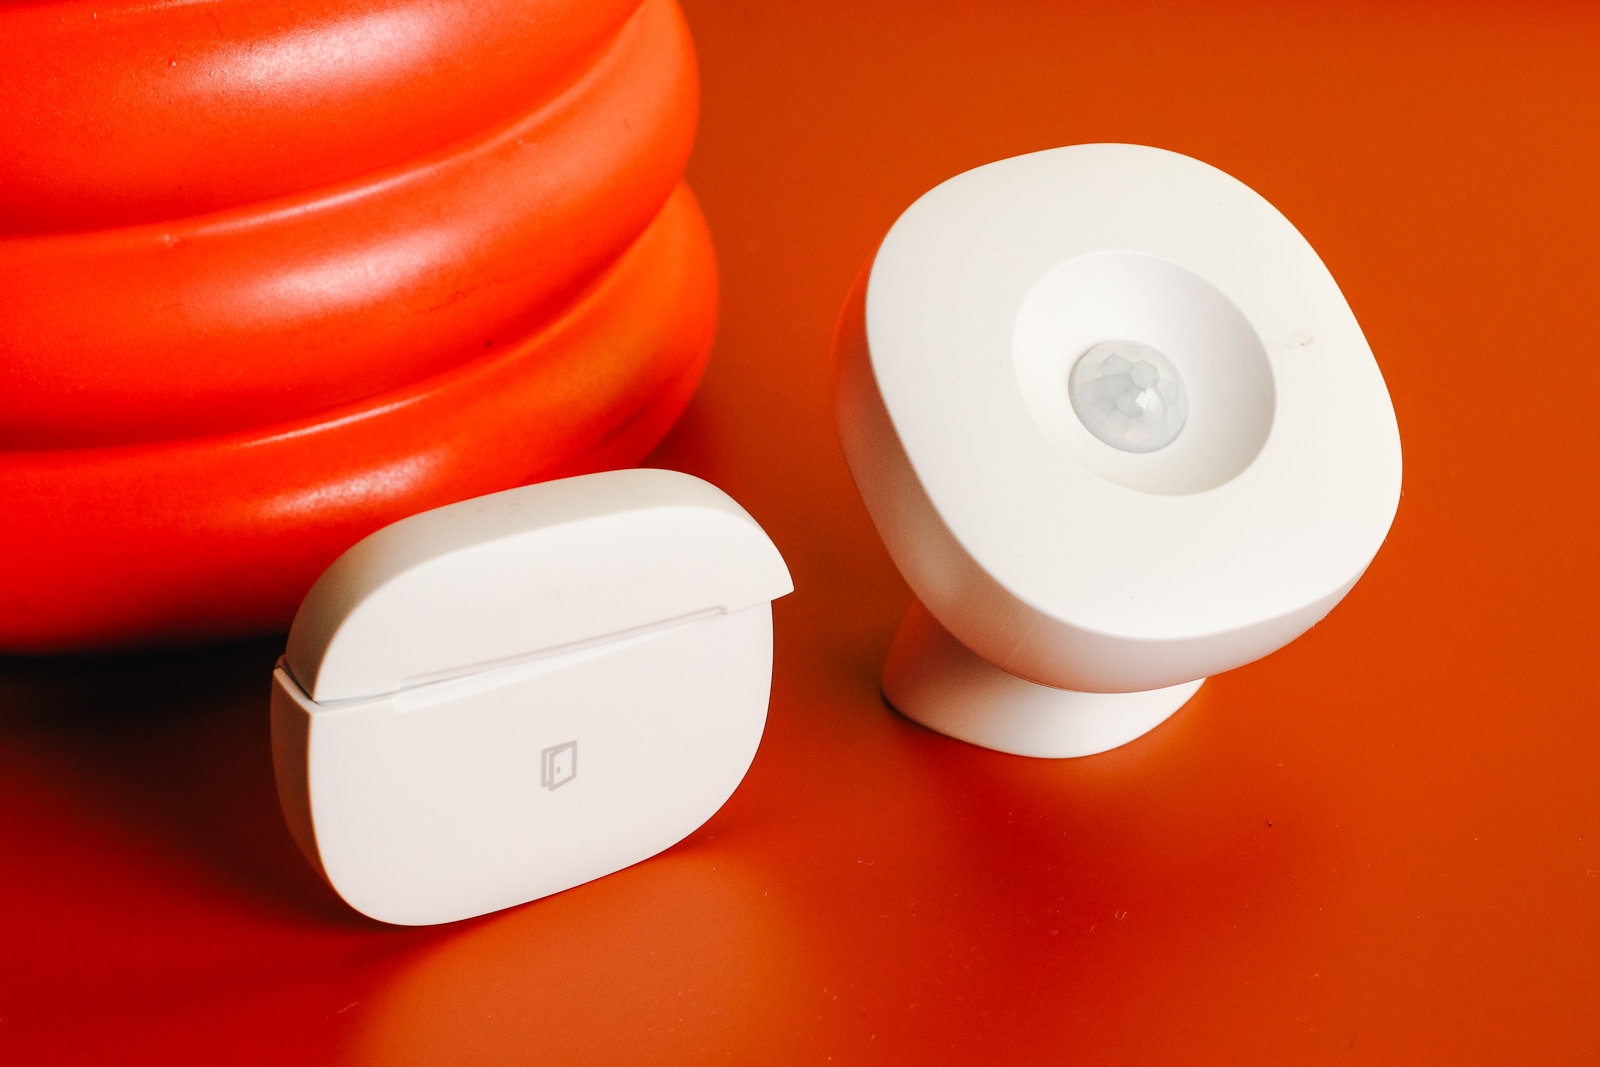 The best smart home sensors for Alexa | DeviceDaily.com